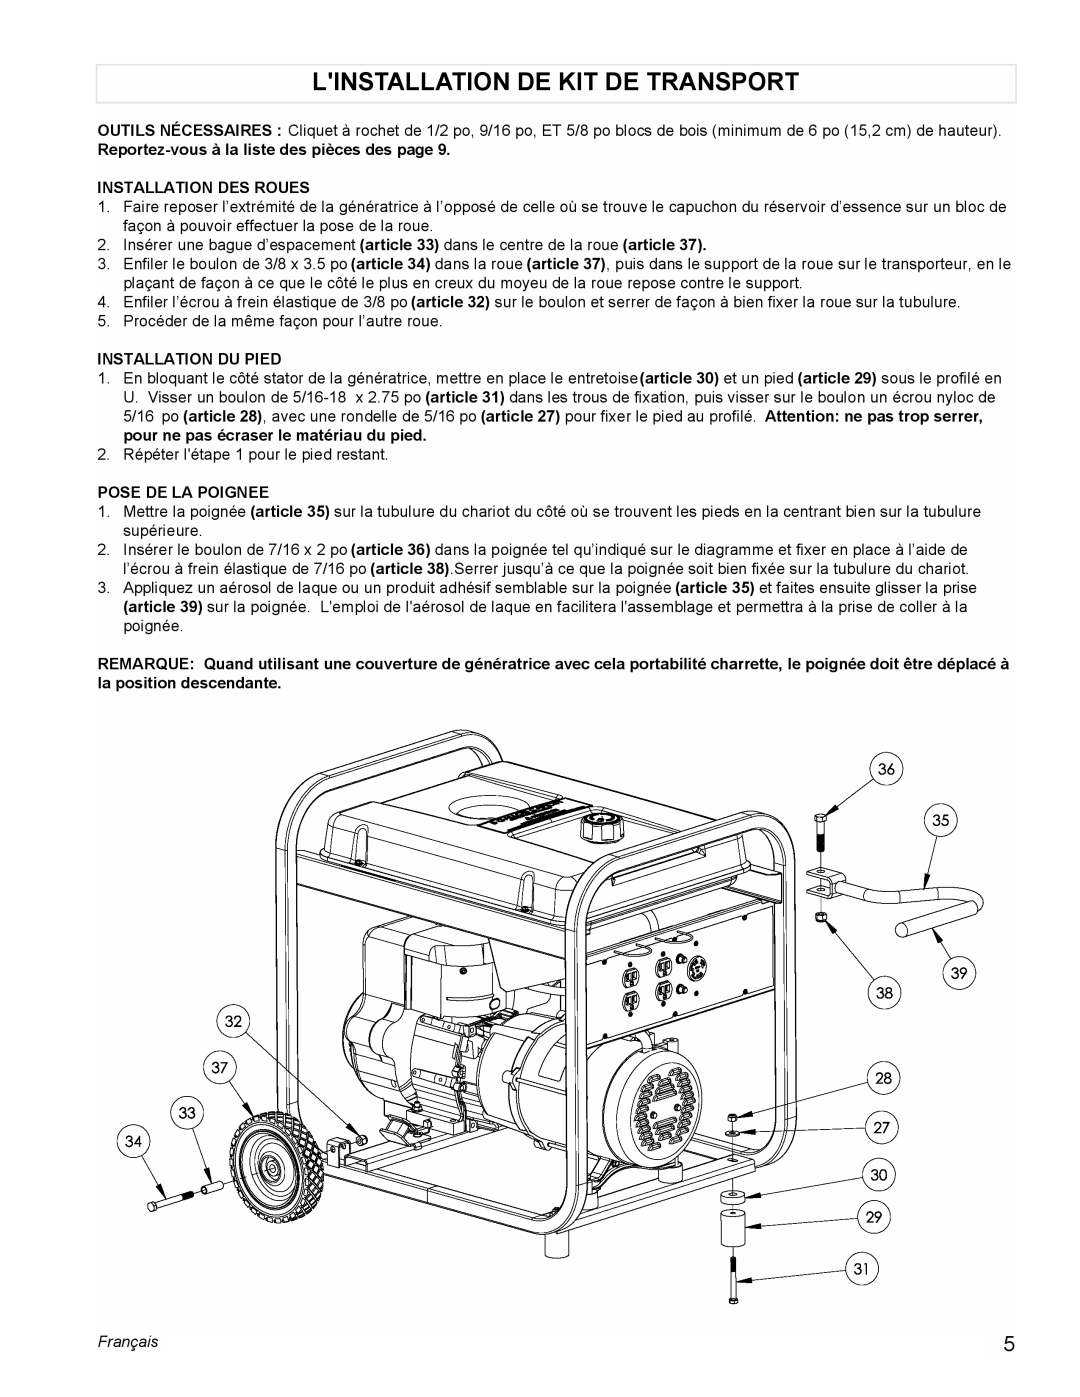 Powermate PM0525312.01 Linstallation De Kit De Transport, Reportez-vousà la liste des pièces des page, Pose De La Poignee 